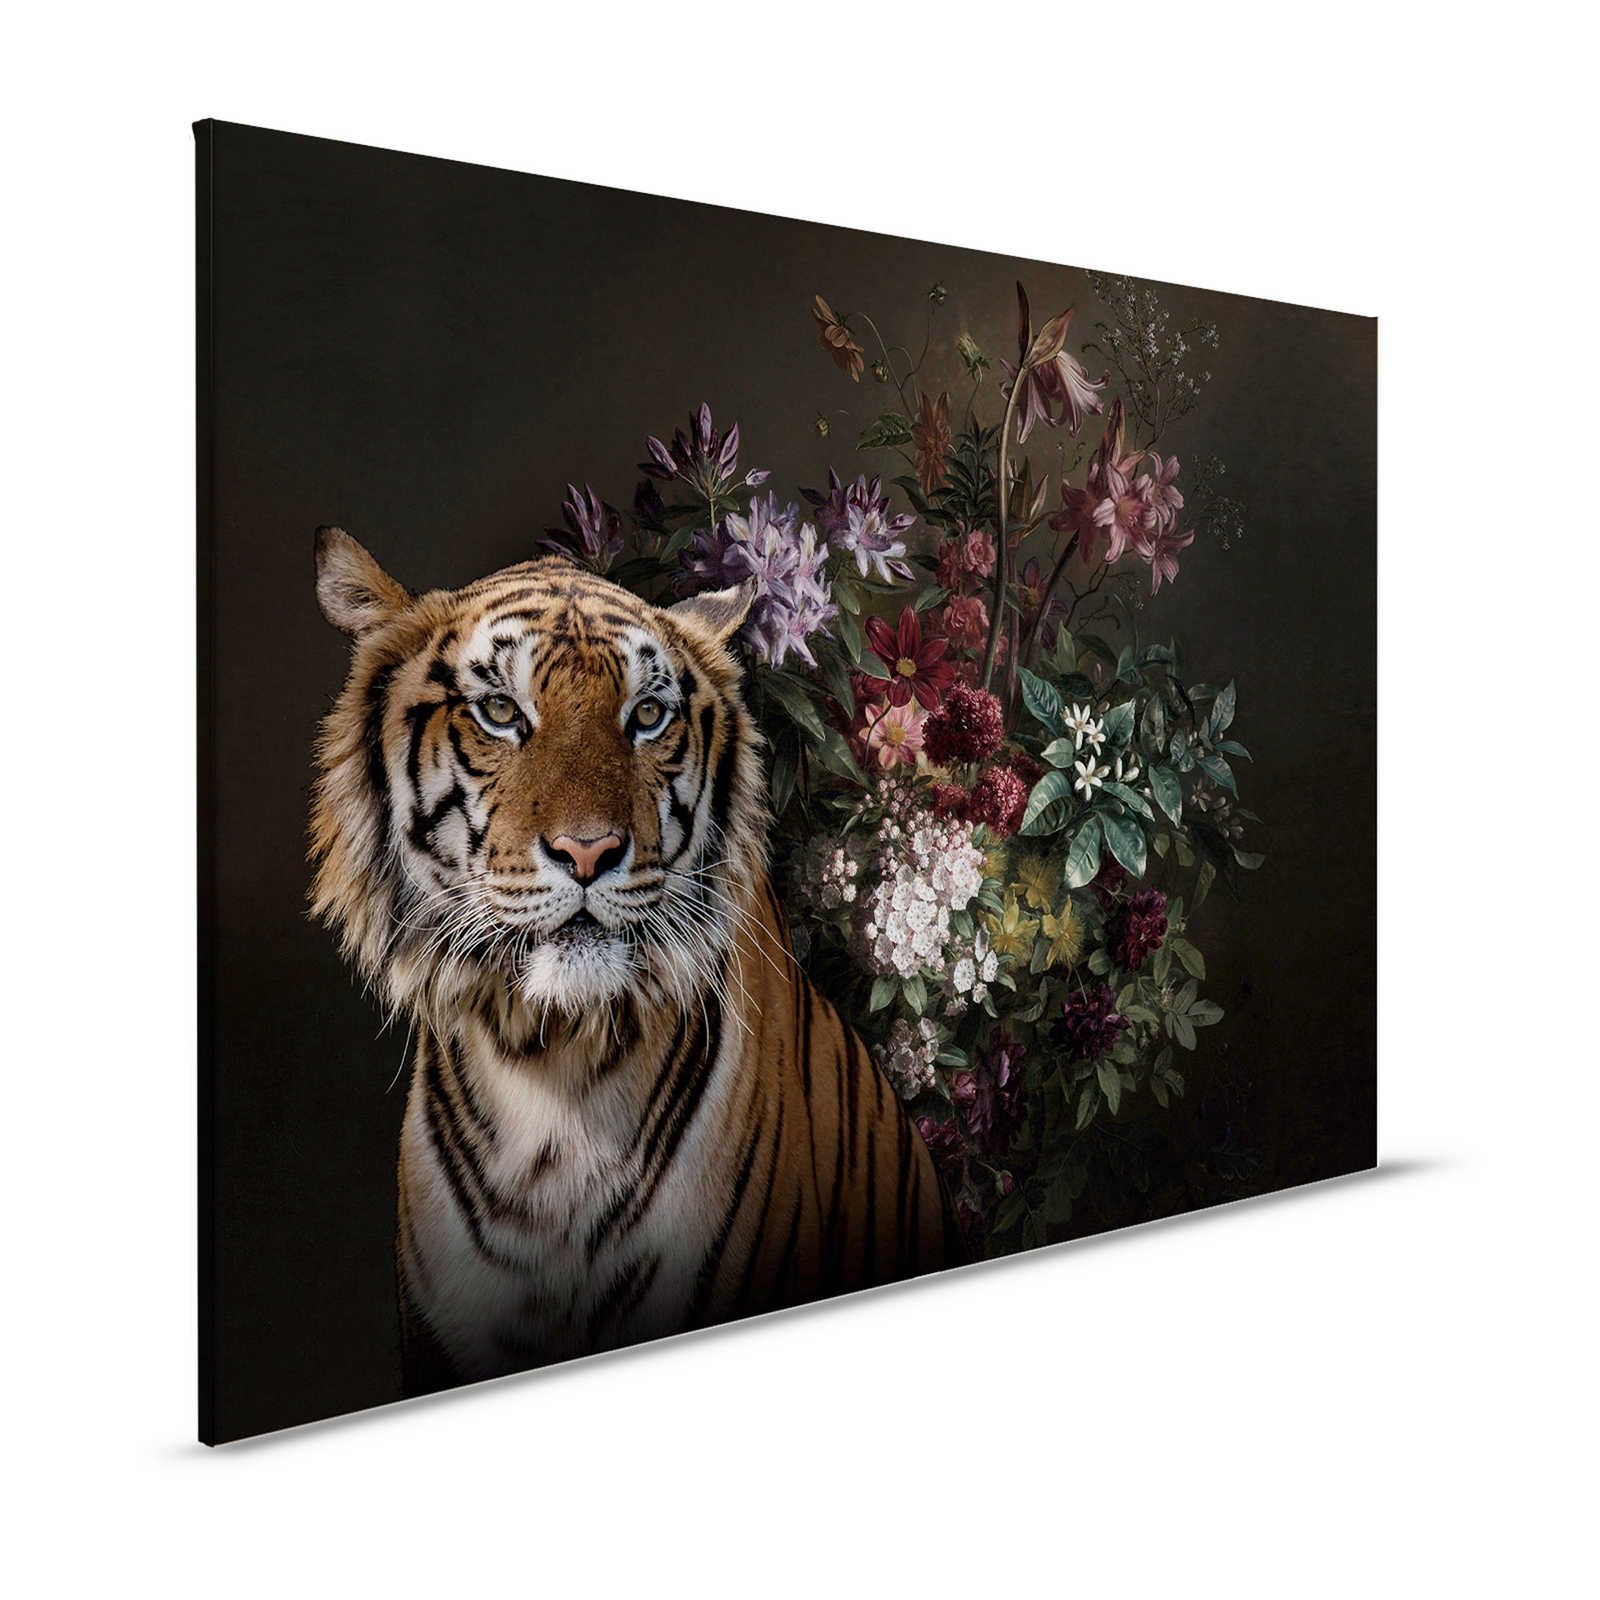 Toile Portrait de tigre avec fleurs - 1,20 m x 0,80 m
